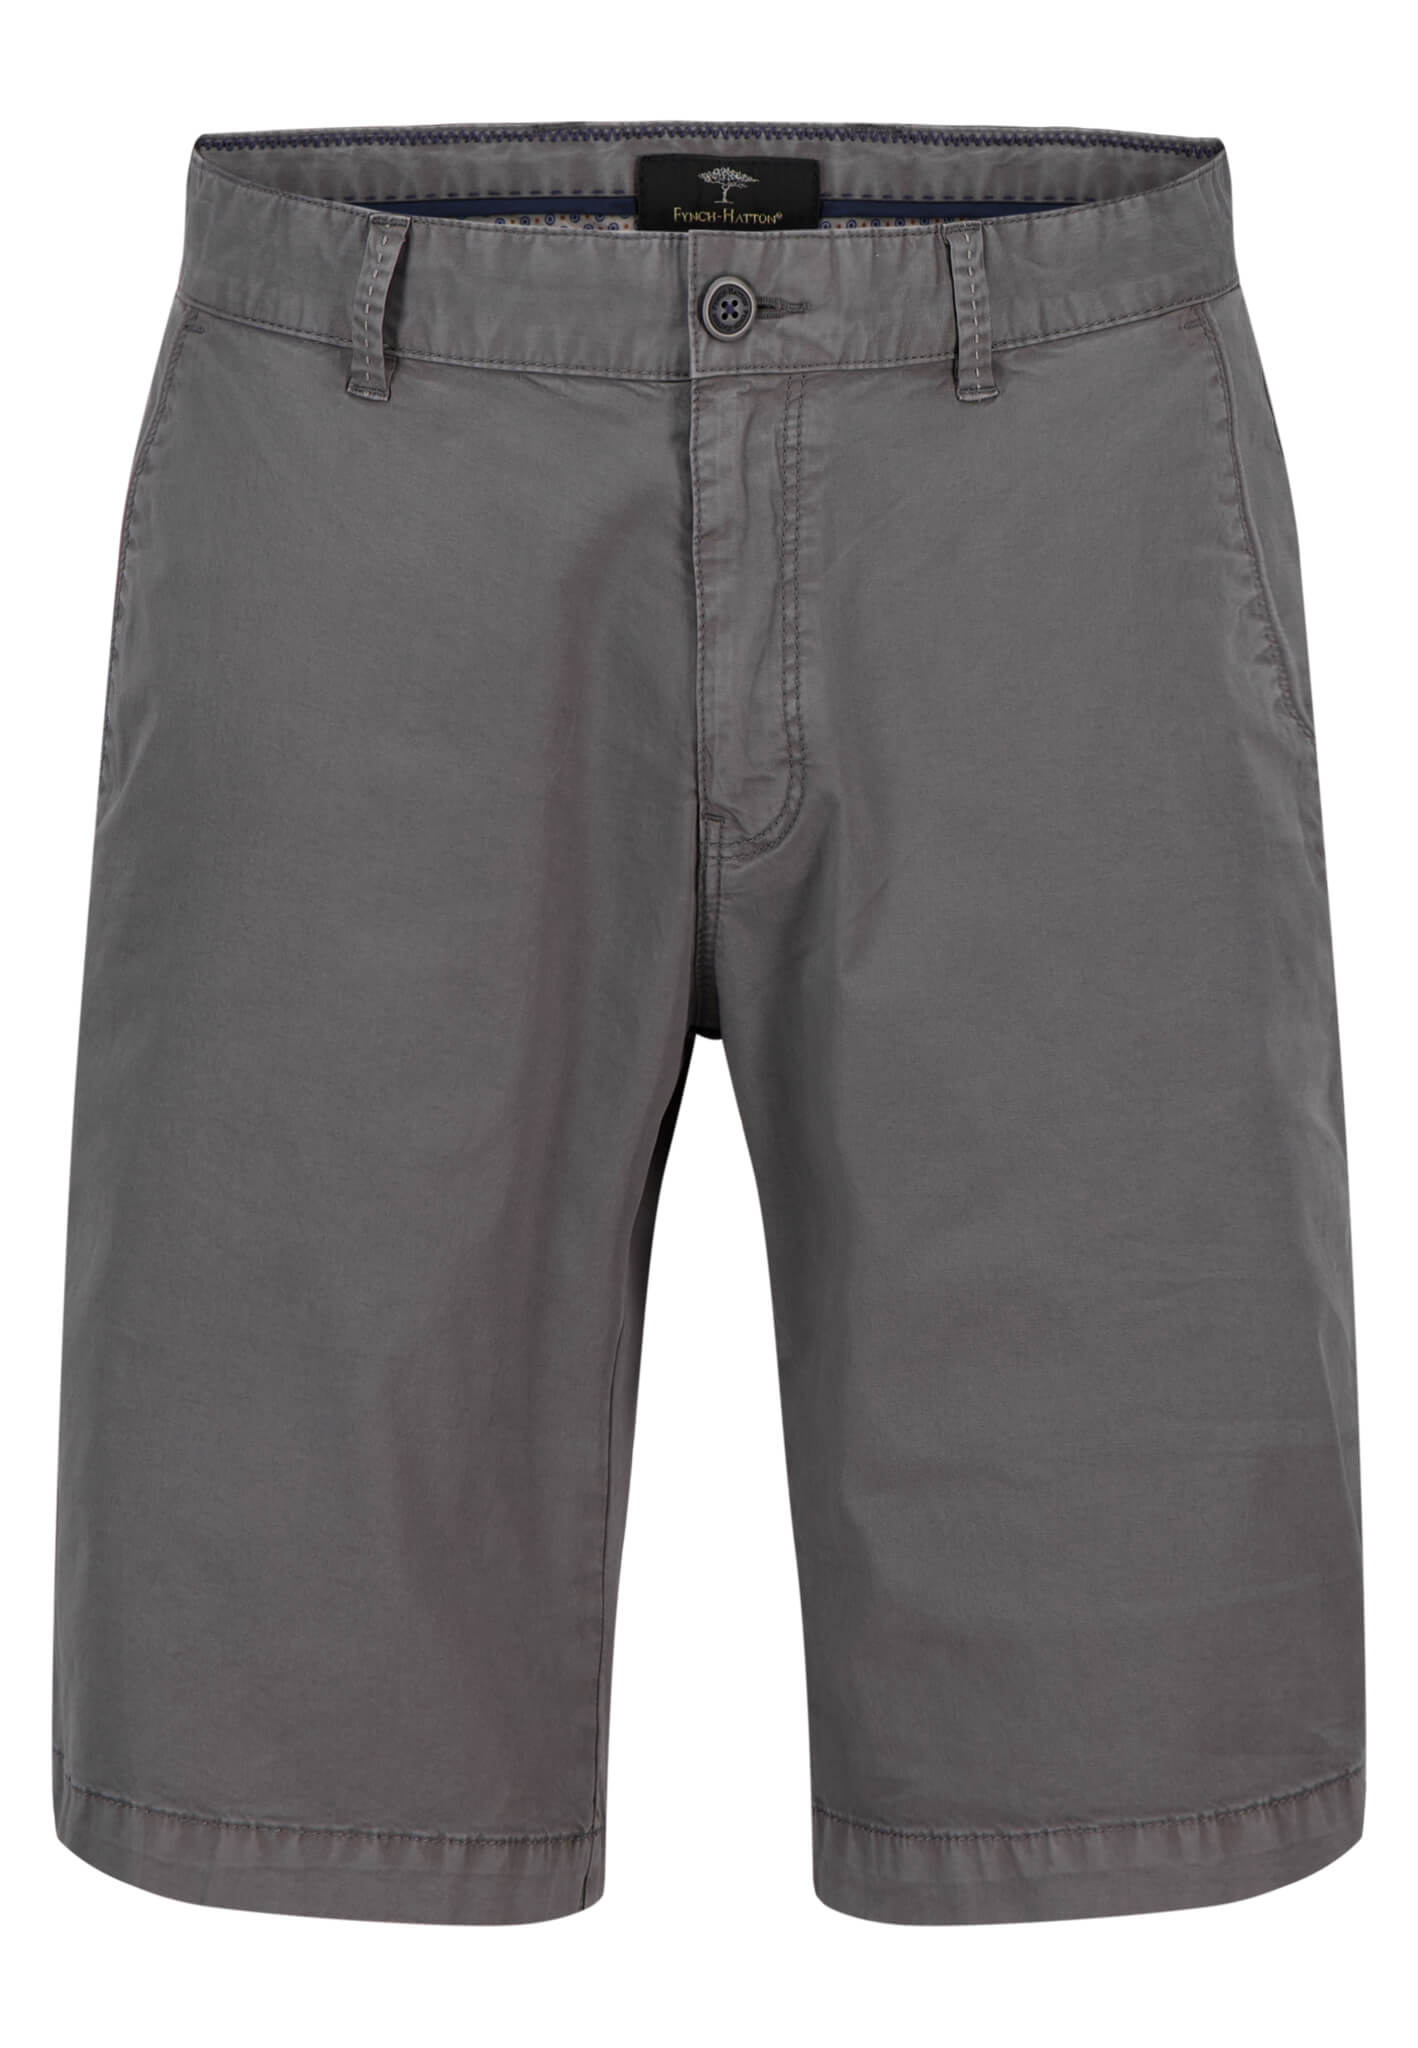 Fynch Hatton Basic Stretch Shorts - Steel